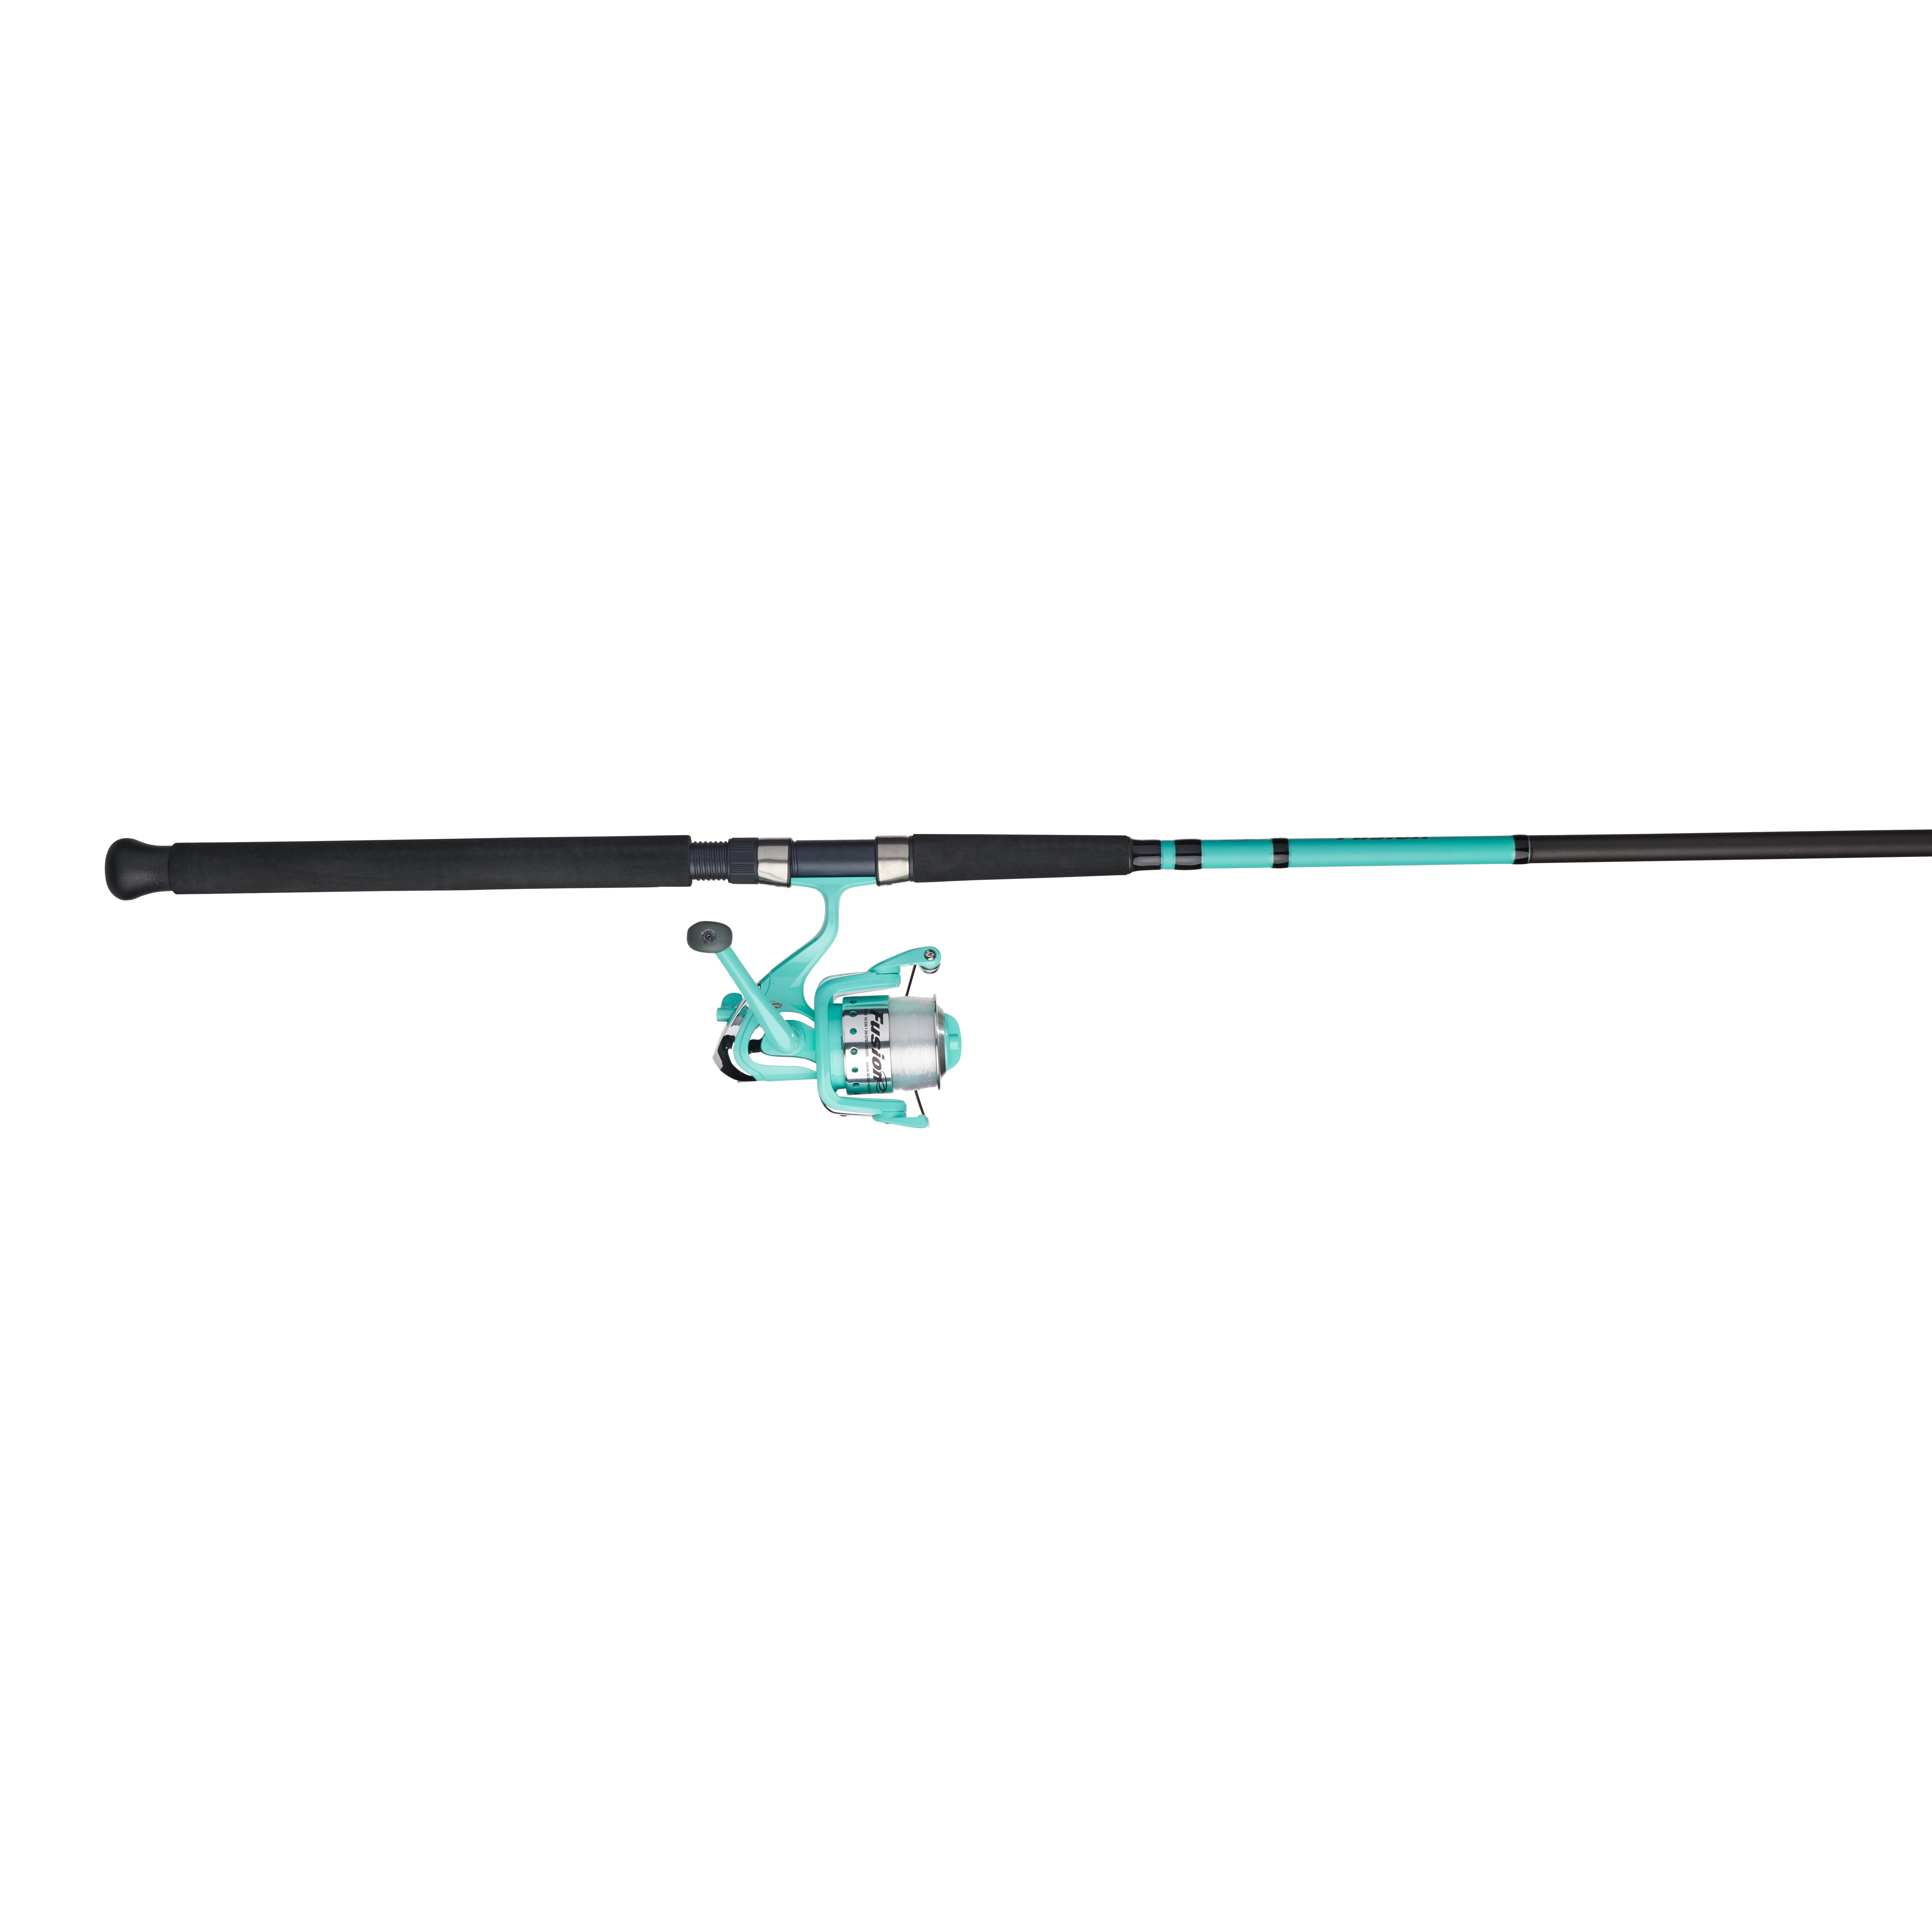 BERKLEY FUSION 206 Fishing Spinning Rod & Reel 7' Medium Heavy